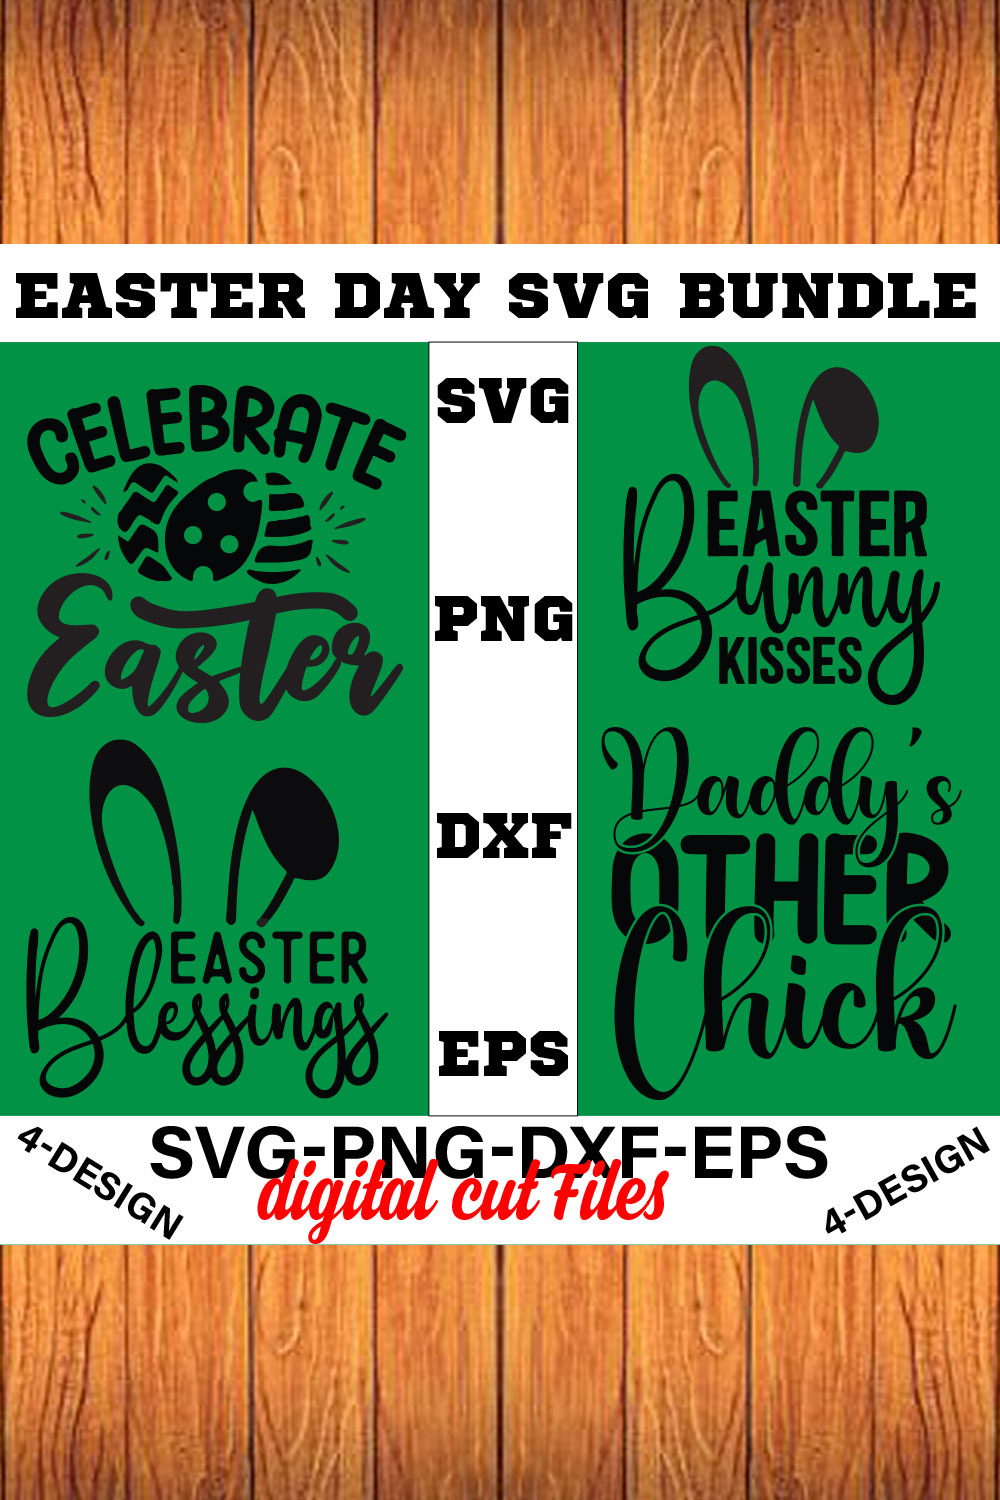 Happy Easter SVG Bundle, Easter SVG, Easter quotes, Easter Bunny svg, Easter Egg svg, Volume-07 pinterest preview image.